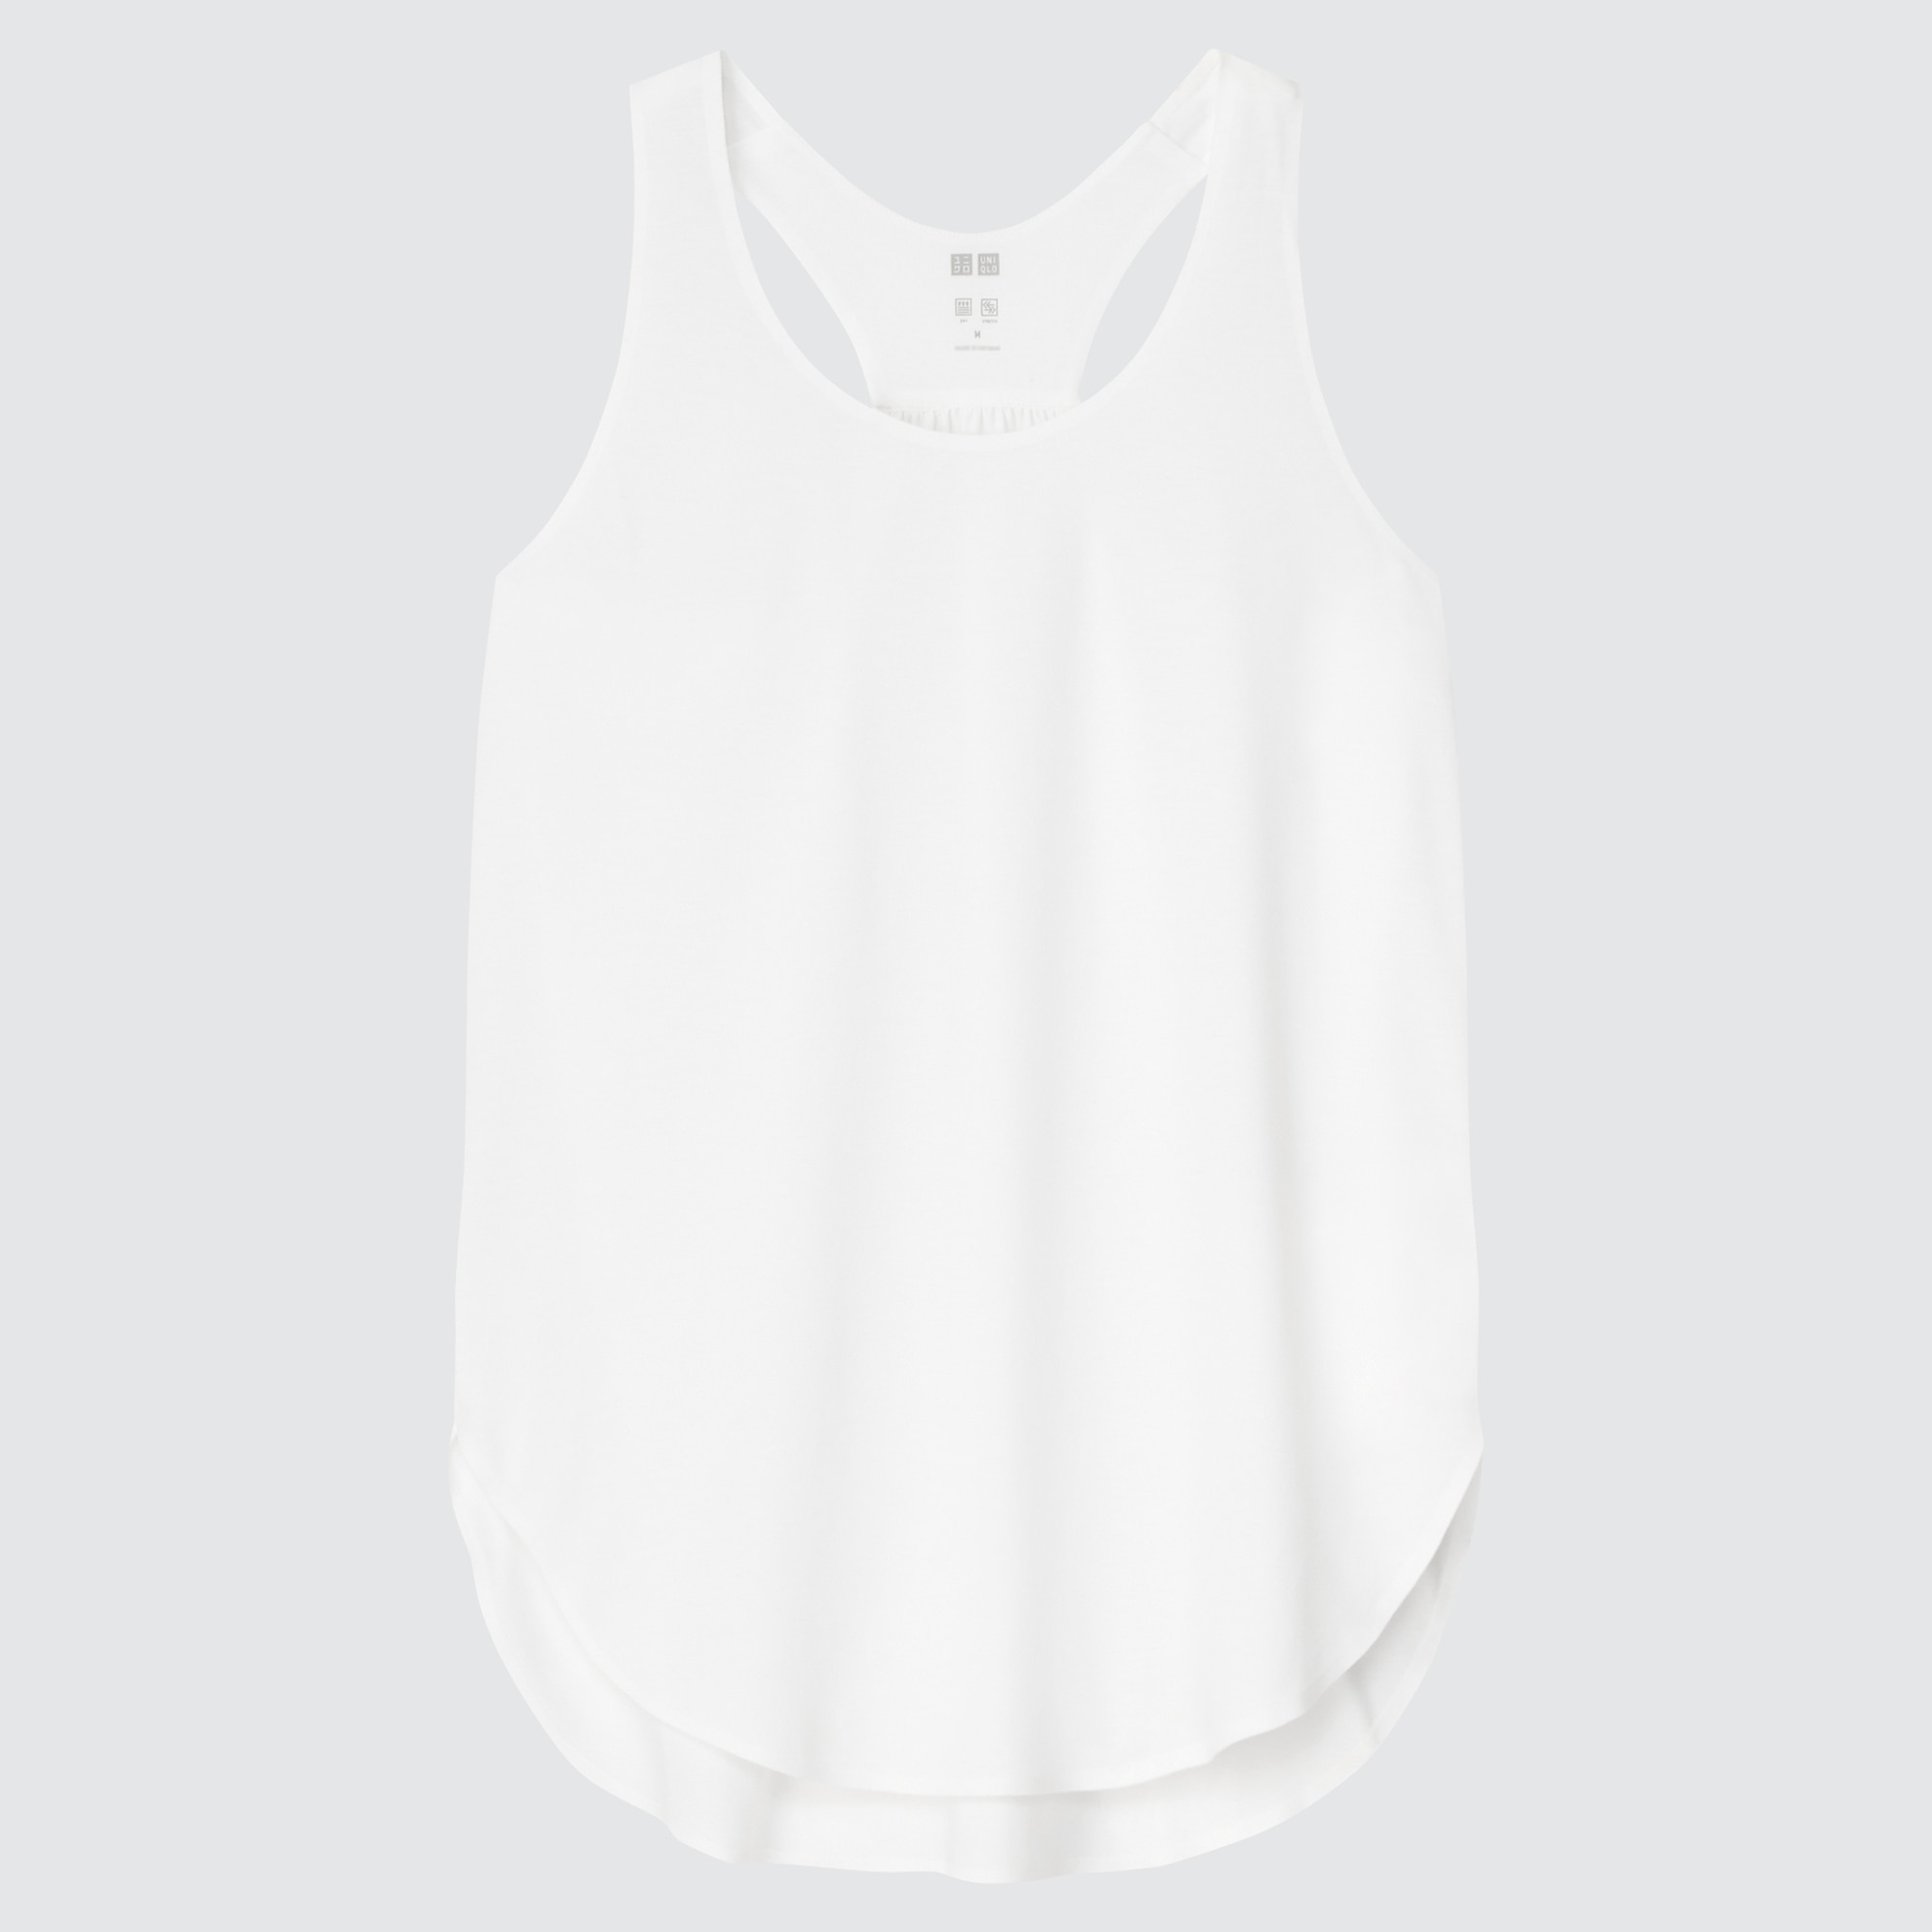 UNIQLO WOMEN'S AIRISM Camisole V-Neck Tank Top White Size S $6.99 - PicClick